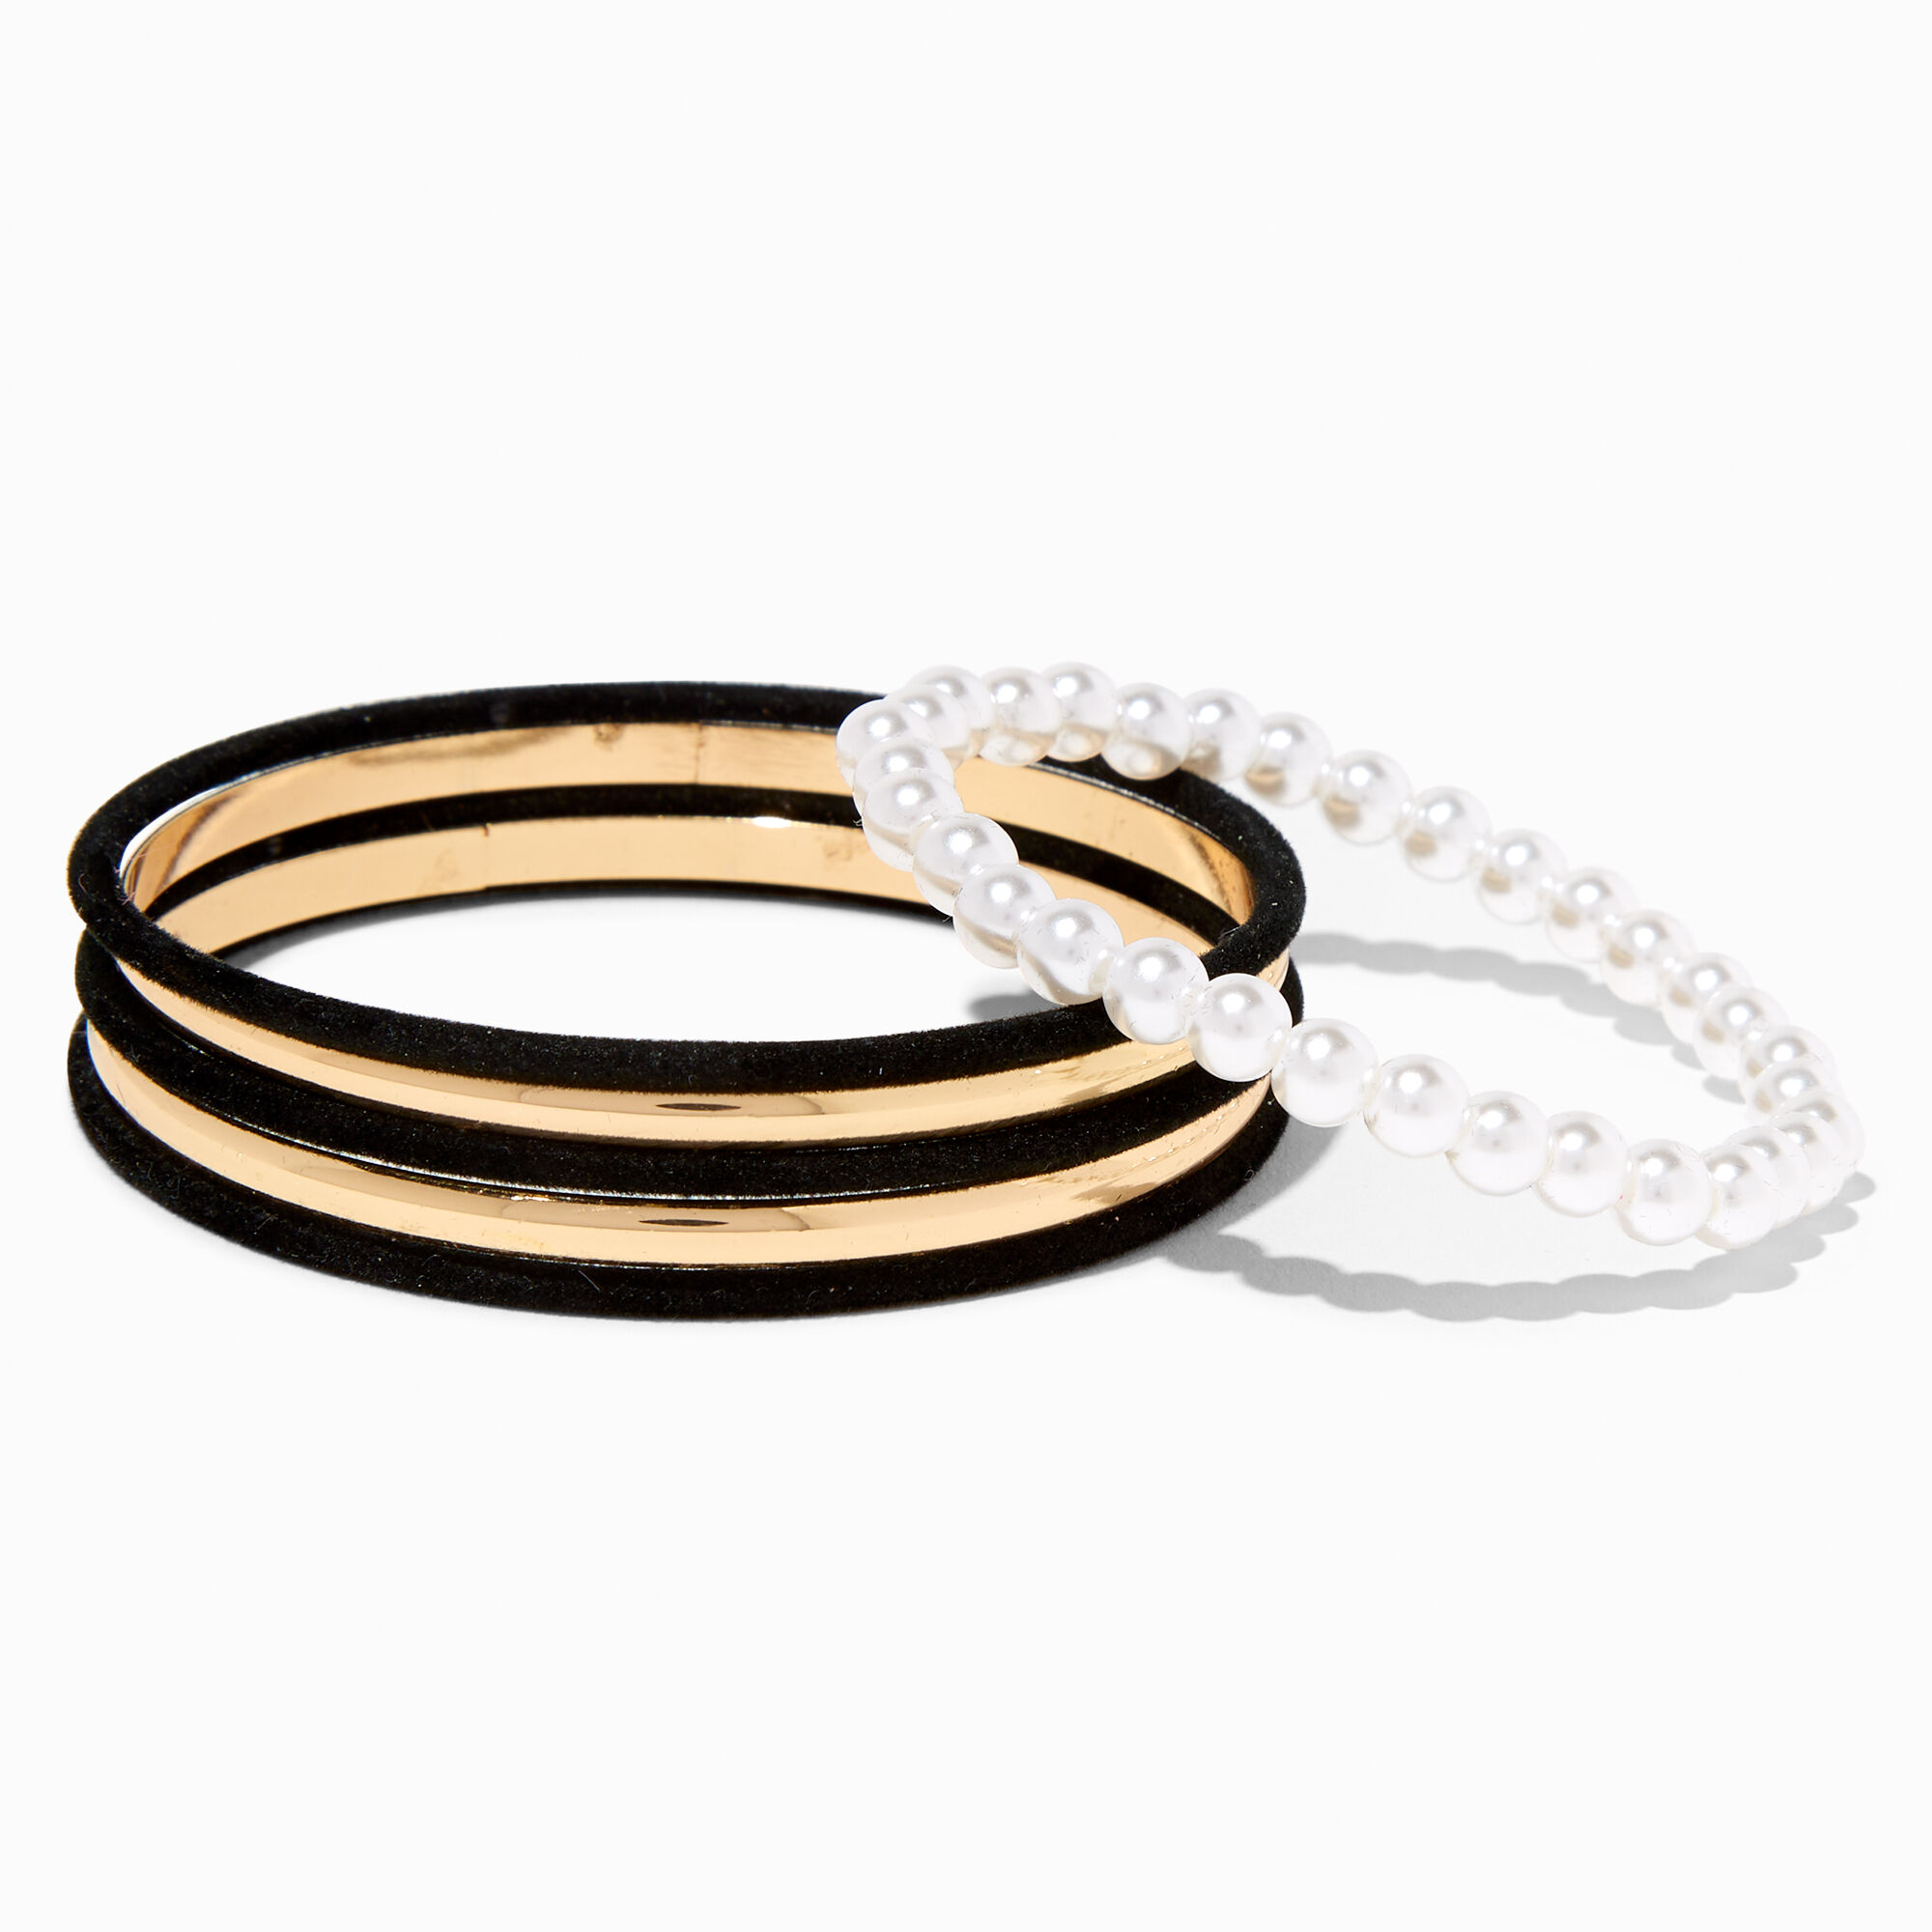 View Claires Felt GoldTone Faux Pearl Bangle Bracelets 6 Pack Black information